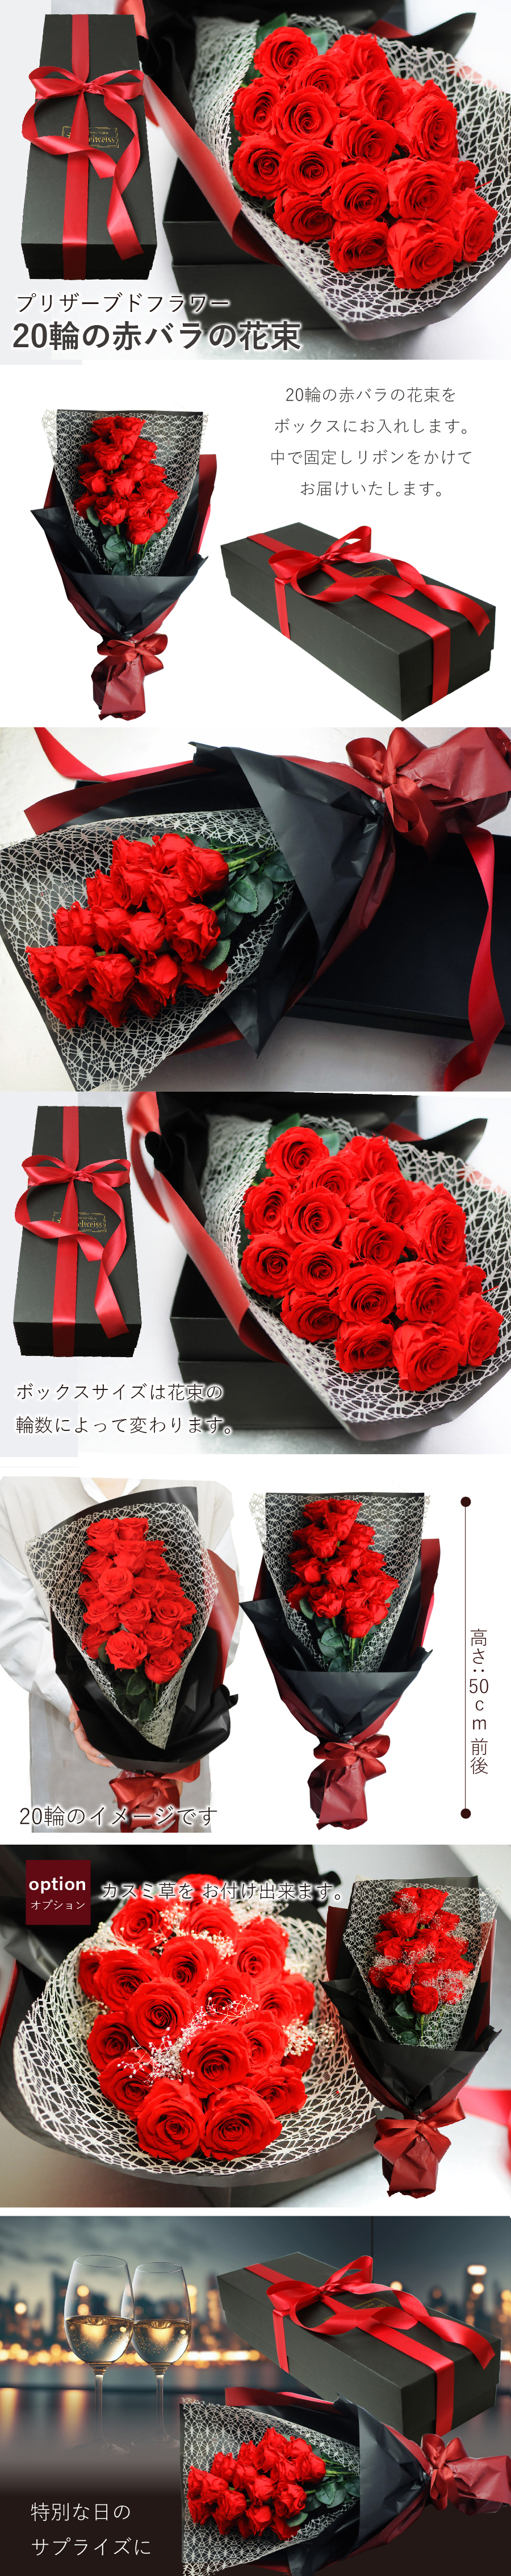 プリザーブドフラワー 20輪の赤バラの花束 ボックス